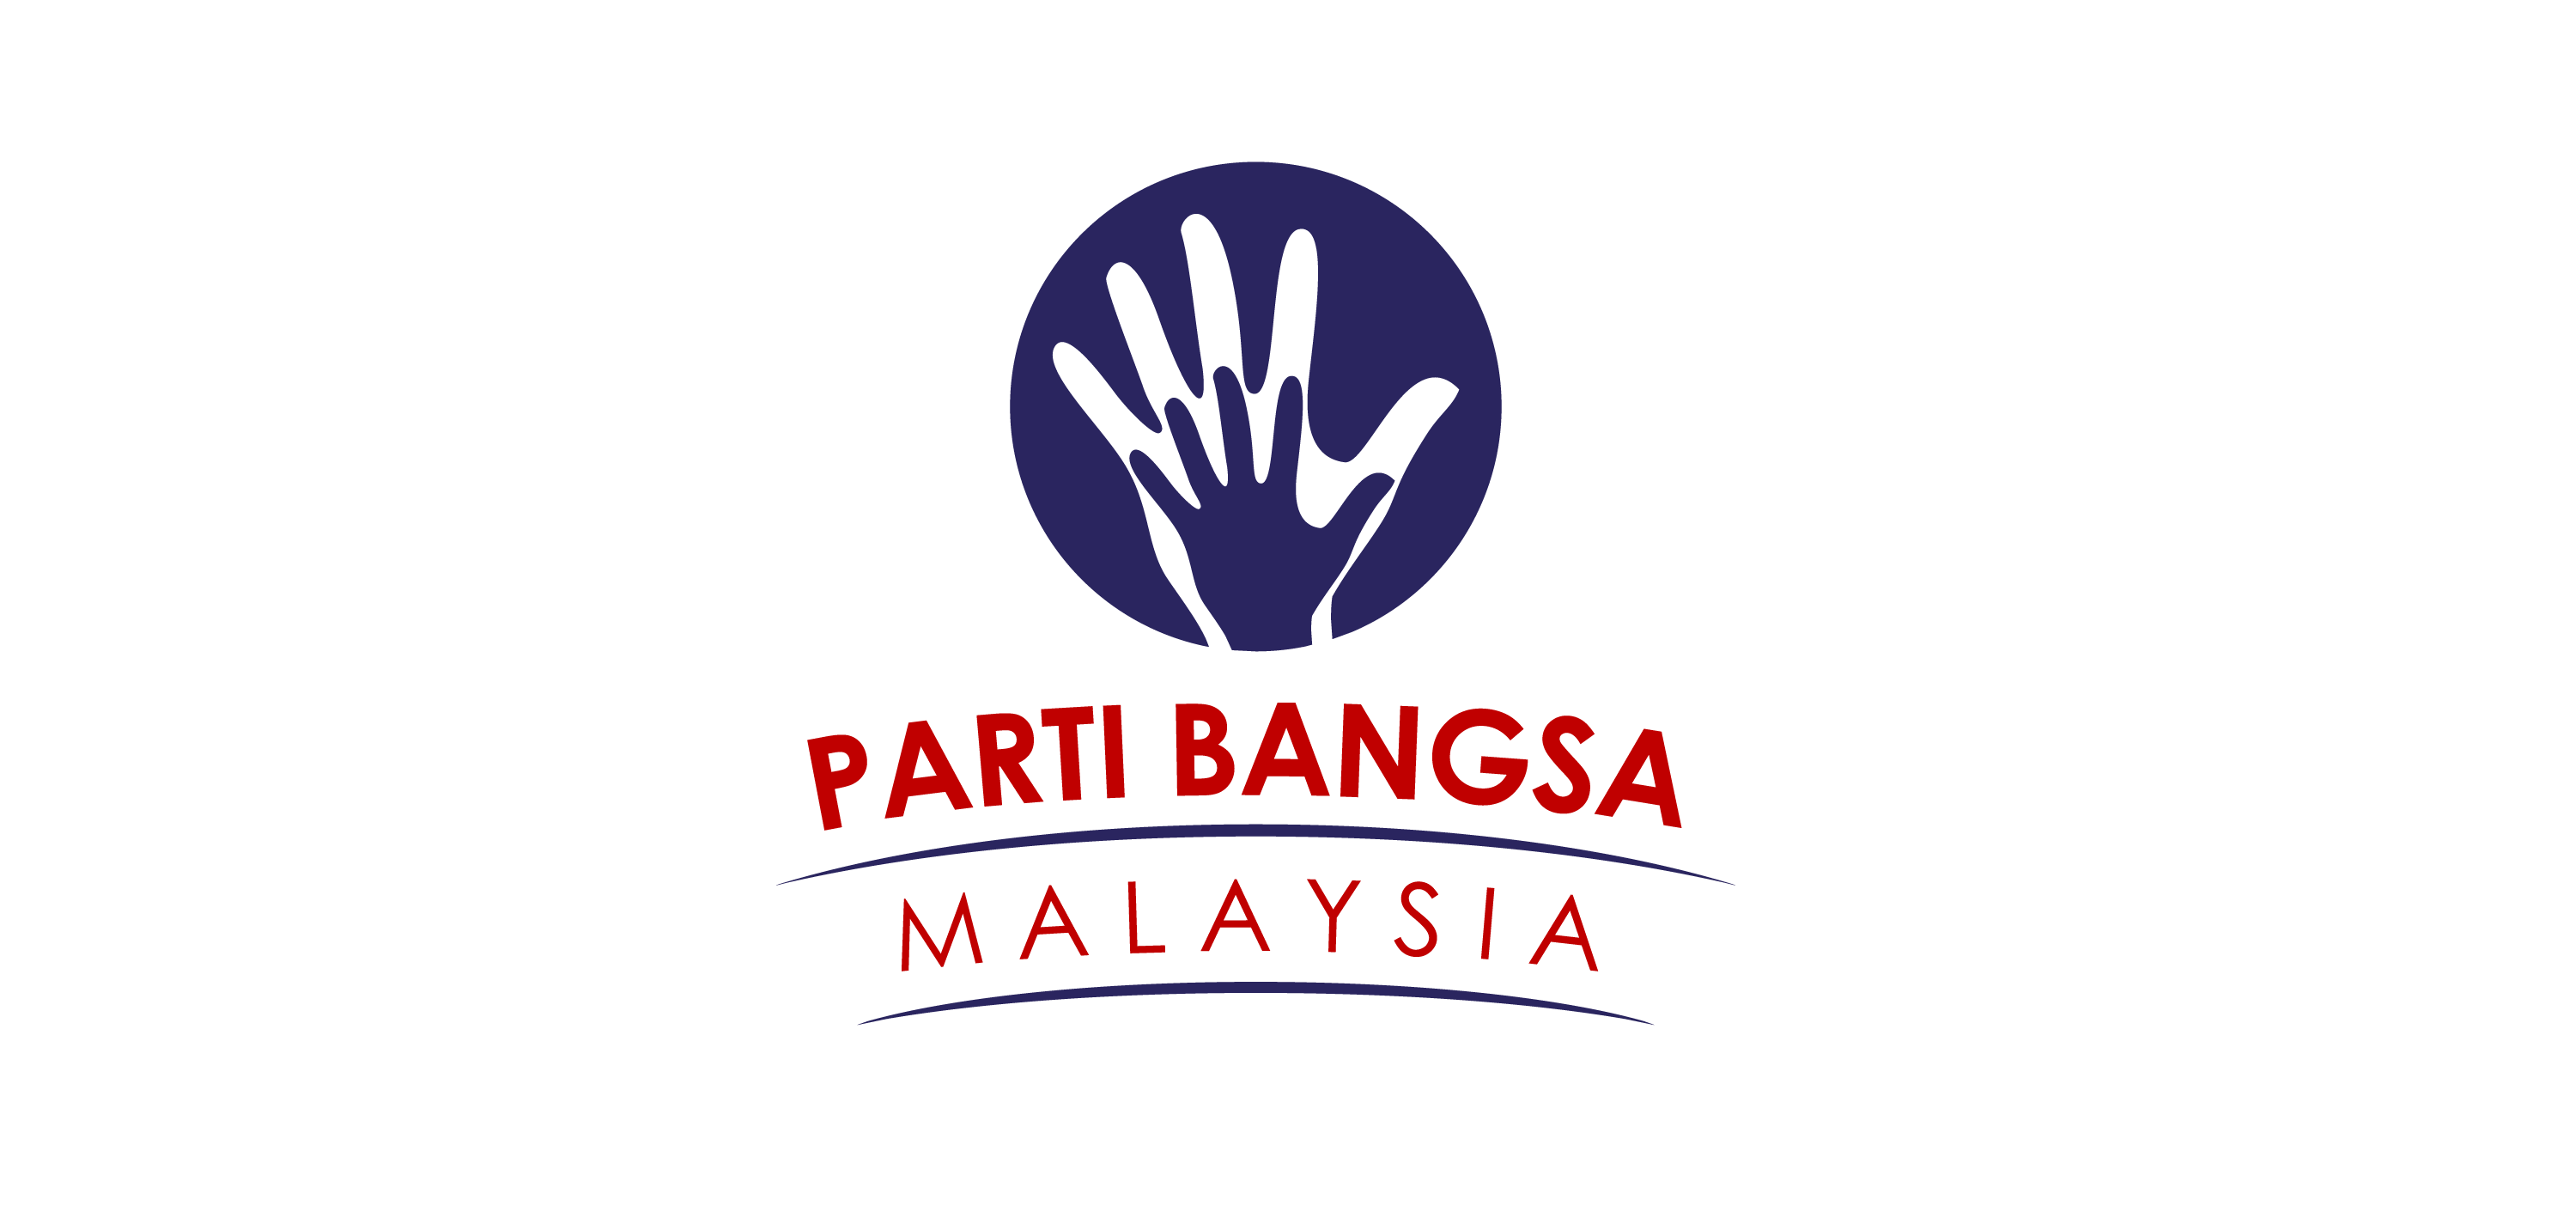 Parti Bangsa Malaysia Vector